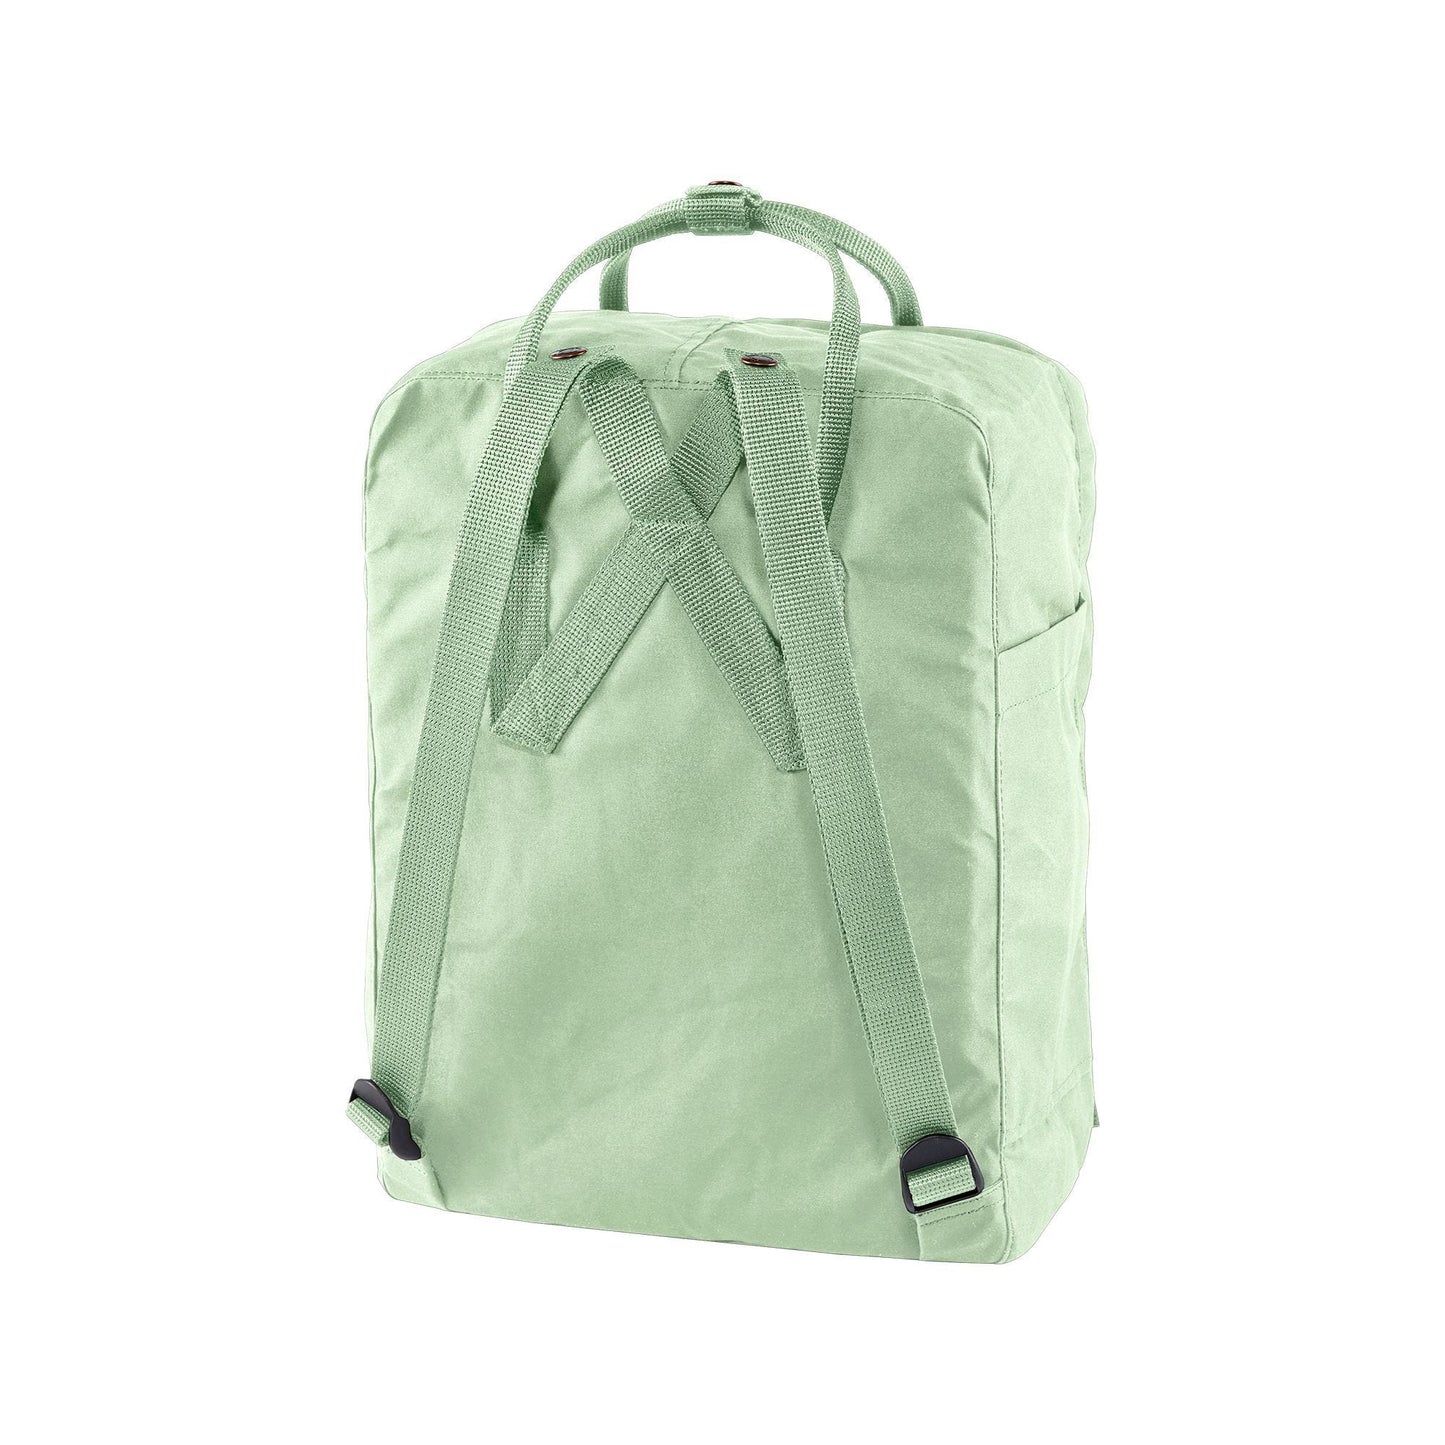 KÅNKEN Backpack Mint Green